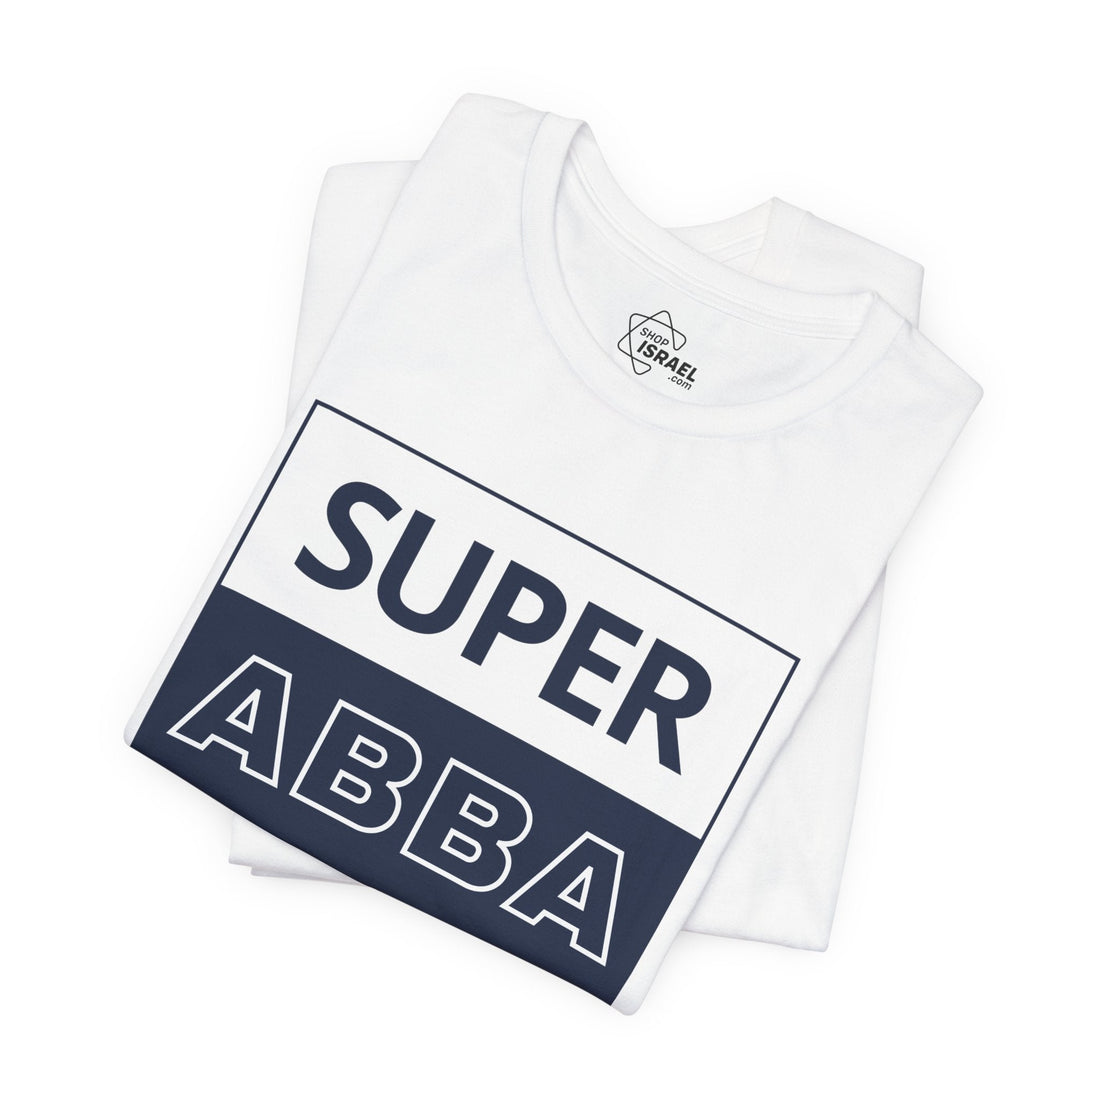 Super Abba T-Shirt - Shop Israel